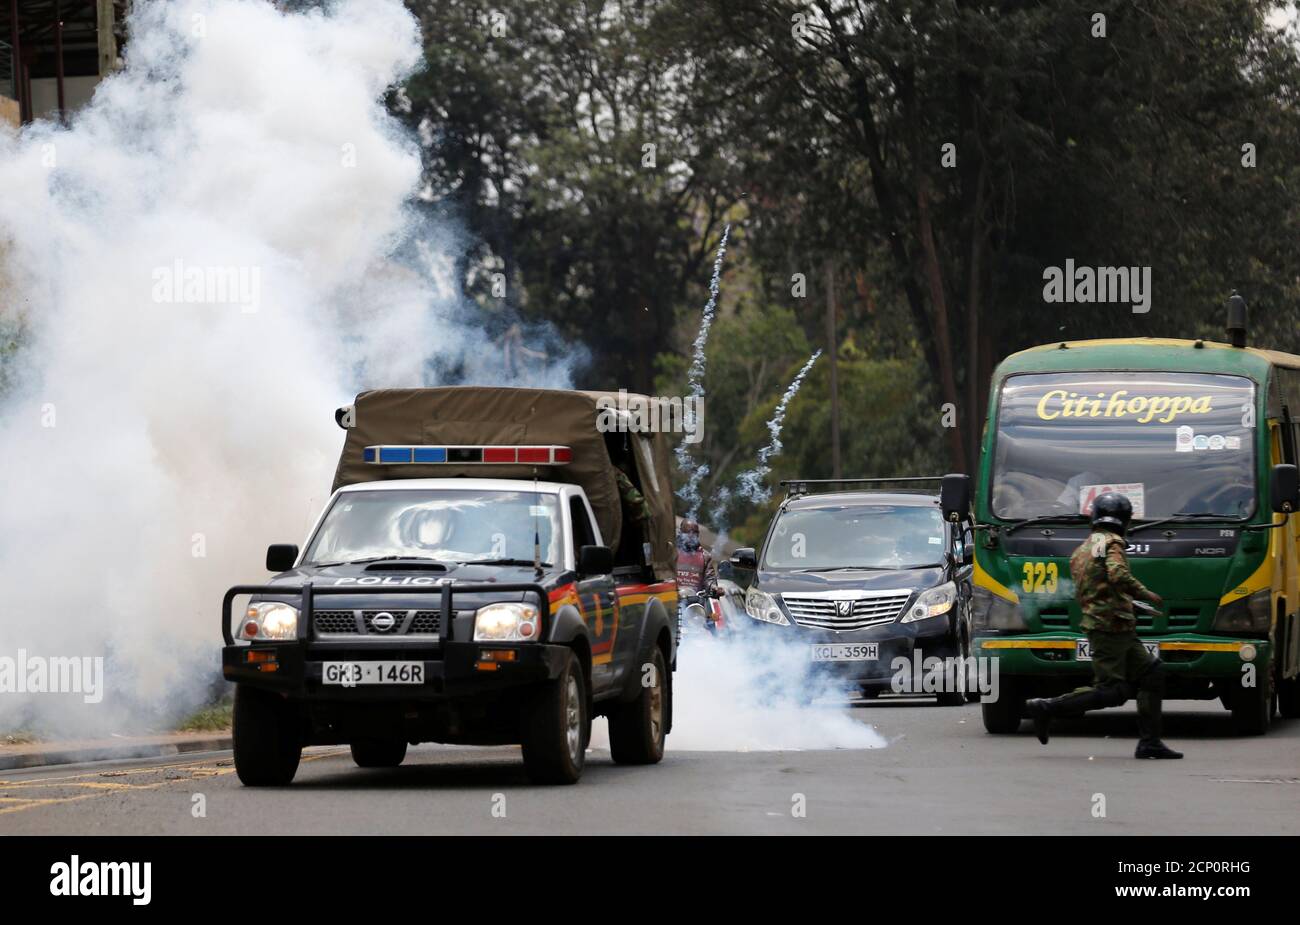 Los policías antidisturbios disparan gases lacrimógenos para dispersar a los partidarios de la coalición de la oposición keniana National Super Alliance (NASA), durante una protesta a lo largo de una calle en Nairobi, Kenia, el 13 de octubre de 2017. REUTERS/Thomas Mukoya Foto de stock